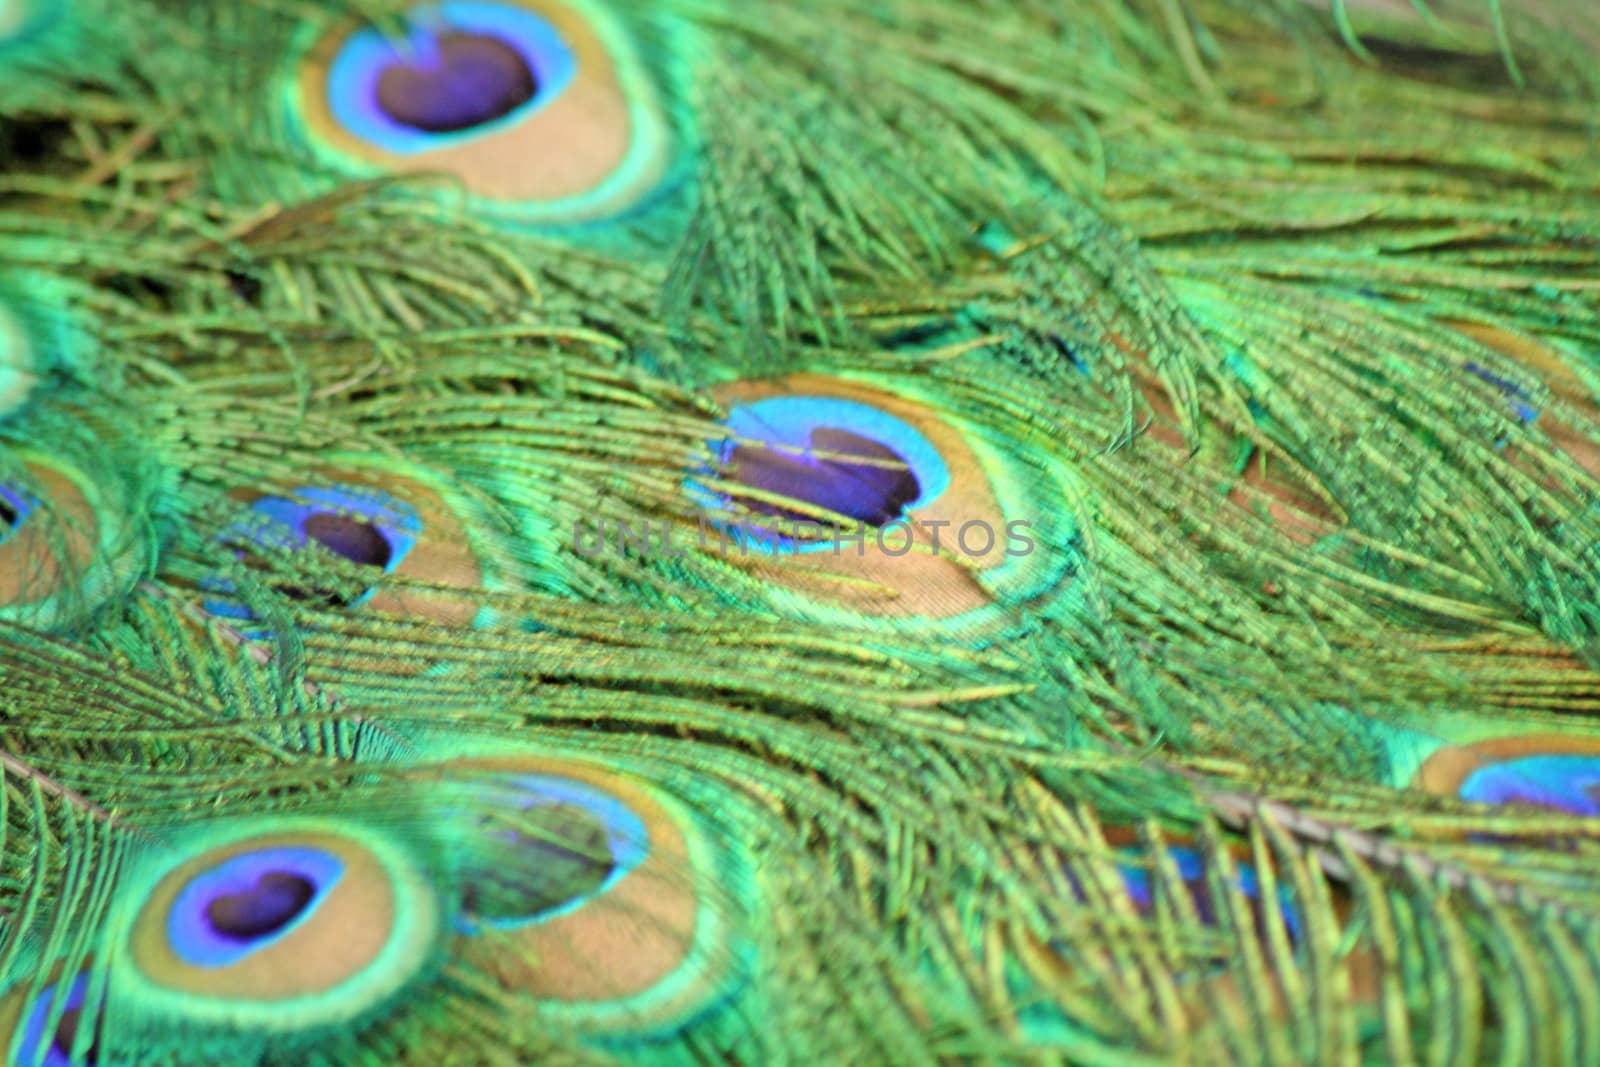 Peacock feathers by Lessadar